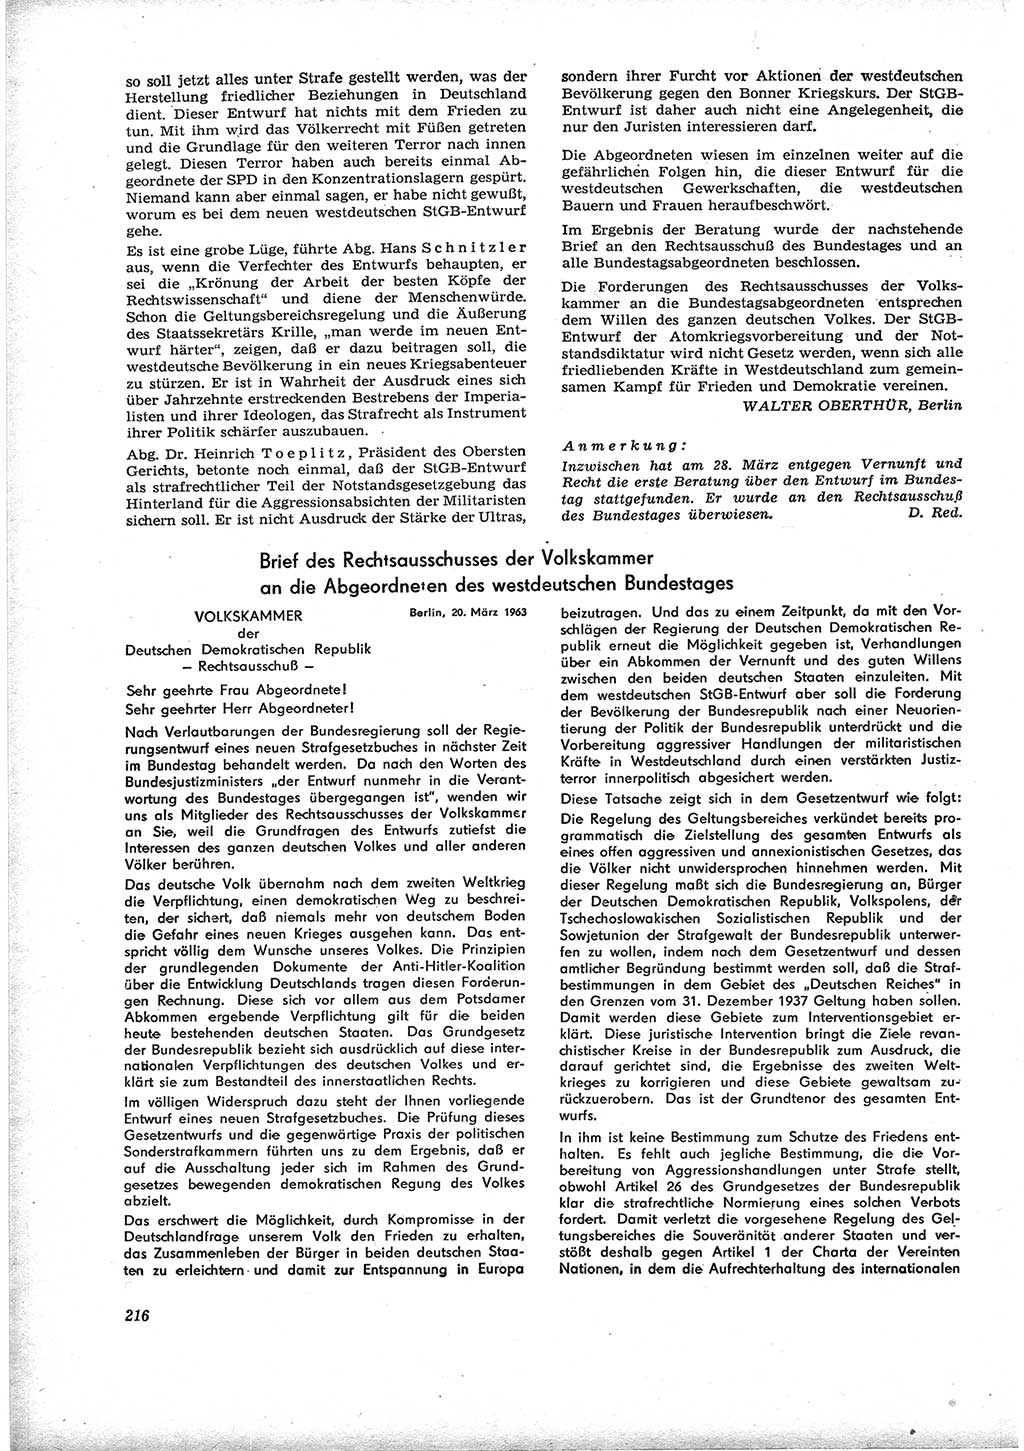 Neue Justiz (NJ), Zeitschrift für Recht und Rechtswissenschaft [Deutsche Demokratische Republik (DDR)], 17. Jahrgang 1963, Seite 216 (NJ DDR 1963, S. 216)